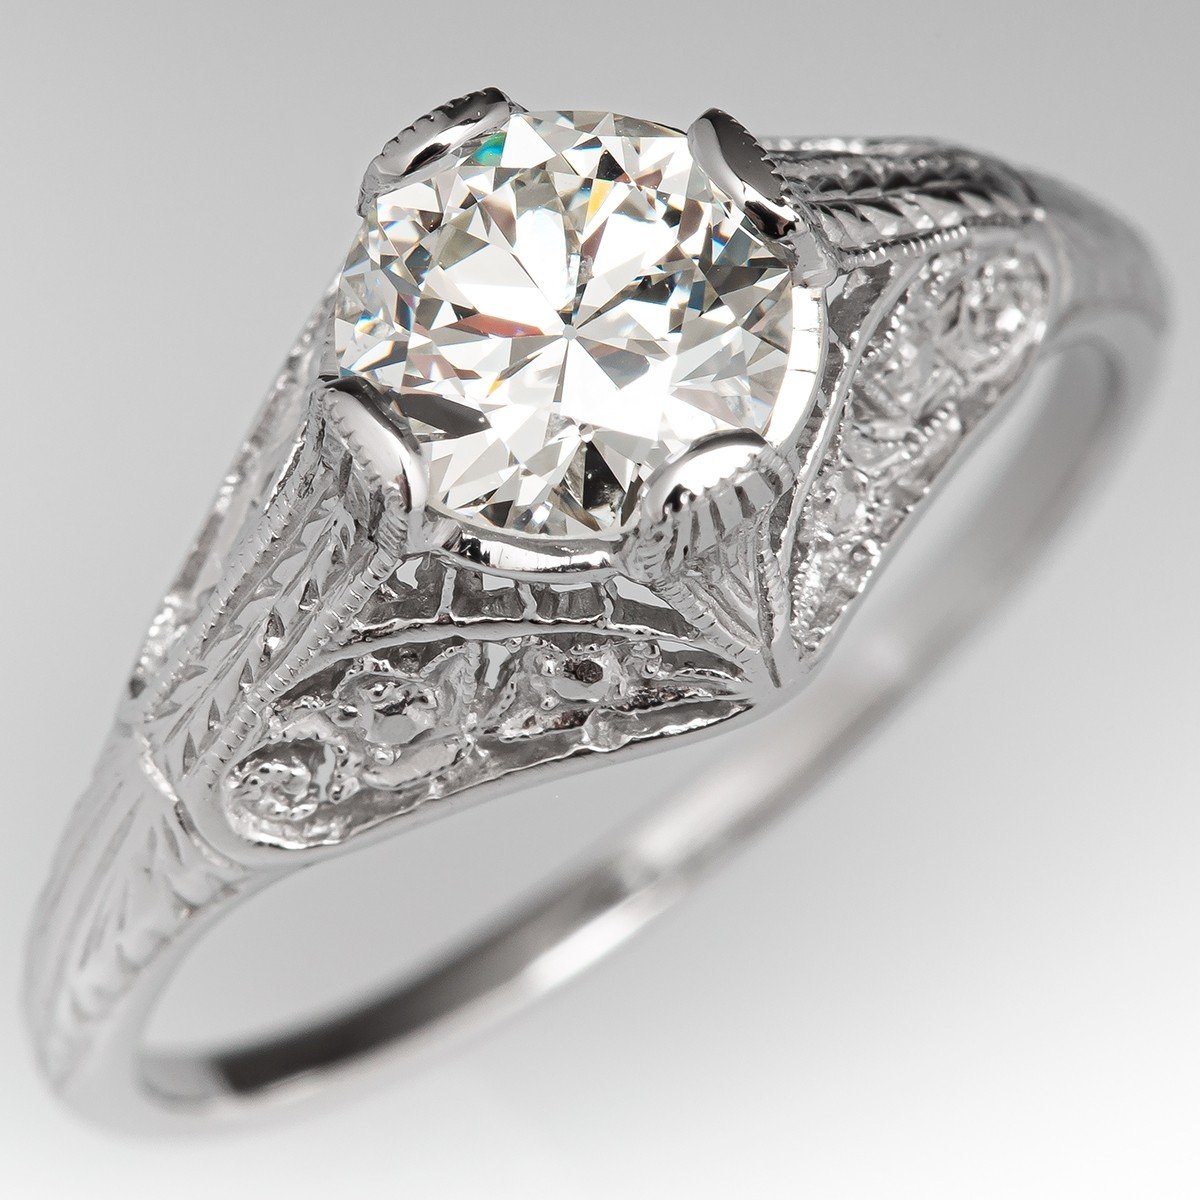 1920's Diamond Antique Filigree Engagement Ring Platinum 1.19ct J/I1 GIA